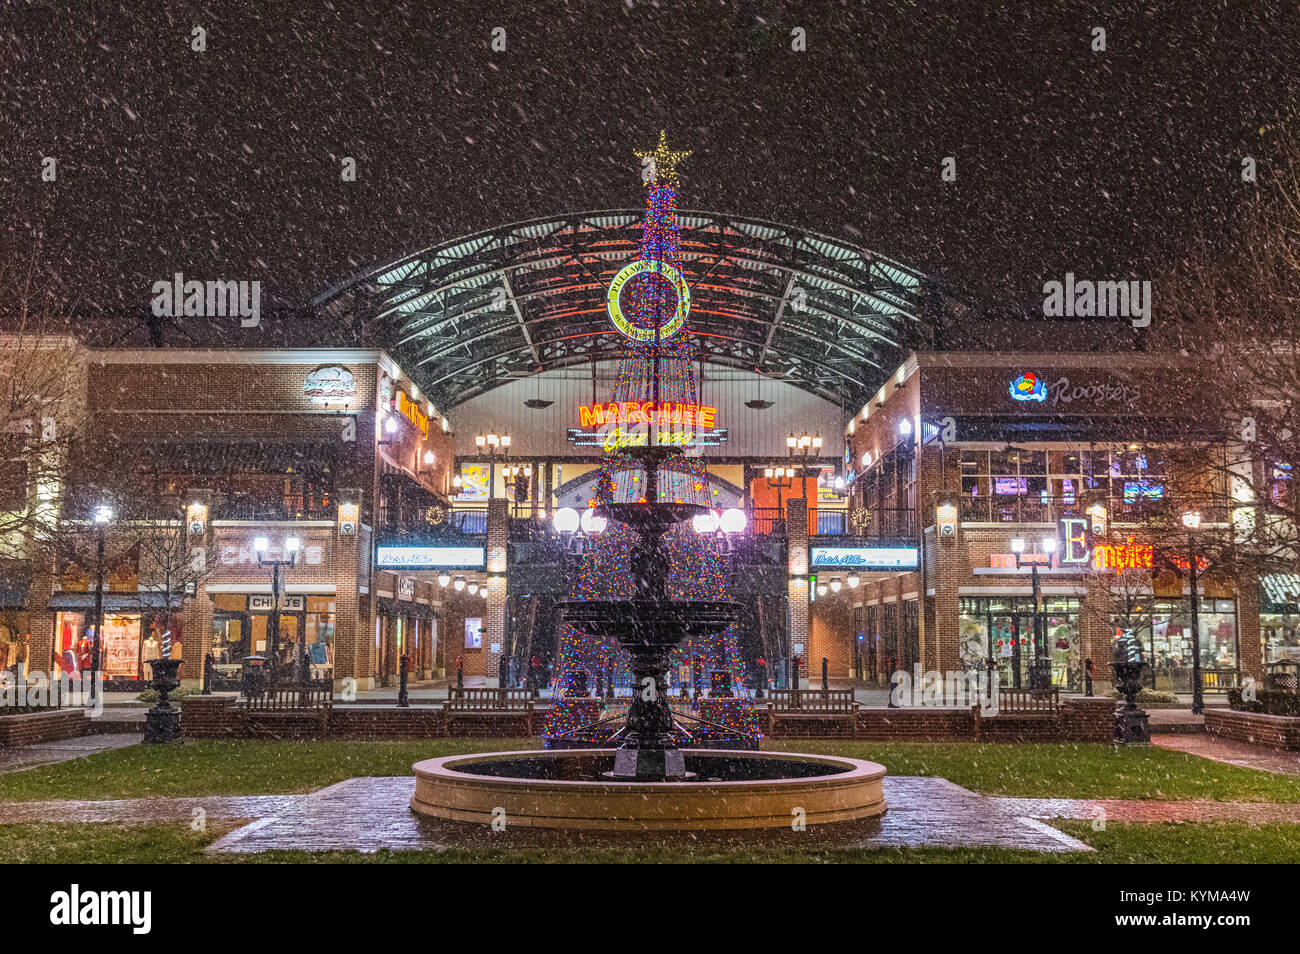 La première neige à Huntington, West Virginia de 2017 hits Pullman Square, la fontaine et les rues ornées de décorations de Noël. Banque D'Images